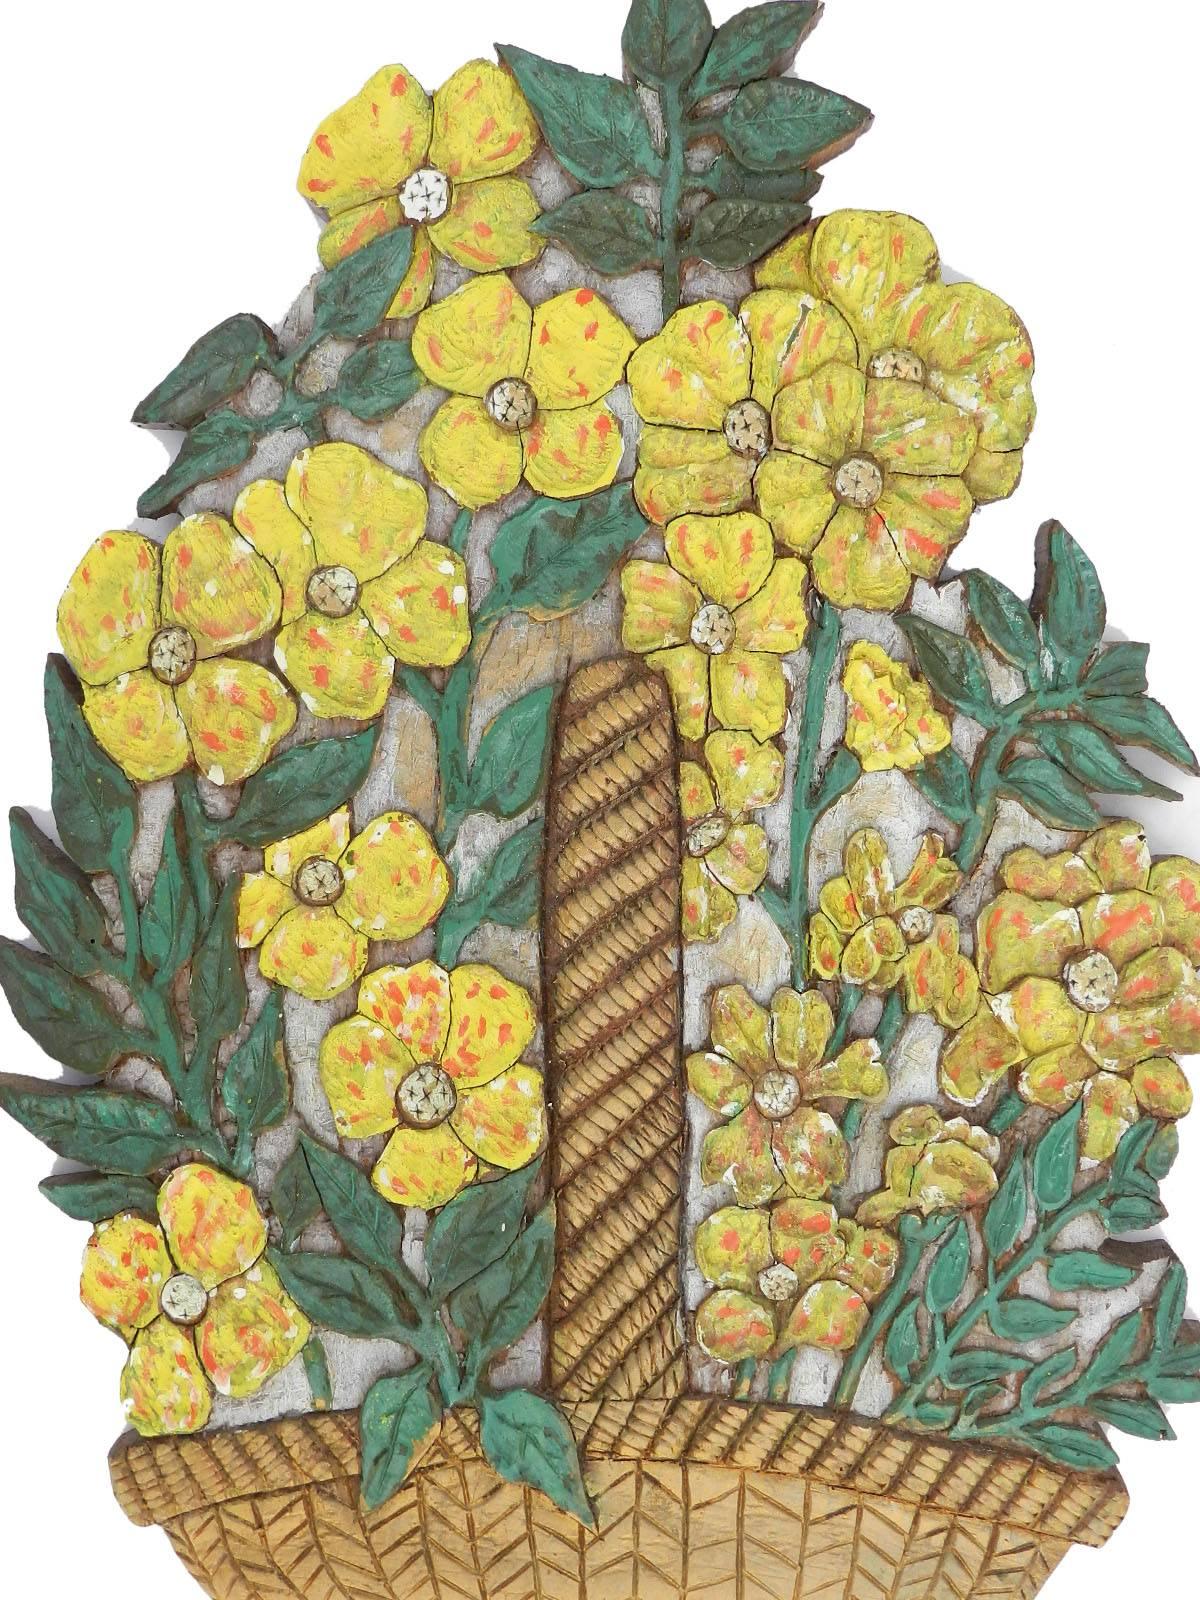 Skulpturale Wandtafel Blumen handgeschnitzt und gemalt floral Korb, um 1930.
Außergewöhnliche dekorative Wandskulptur
Wunderschön bemalte Art Deco-Ära
Naiv und charmant
Altes 